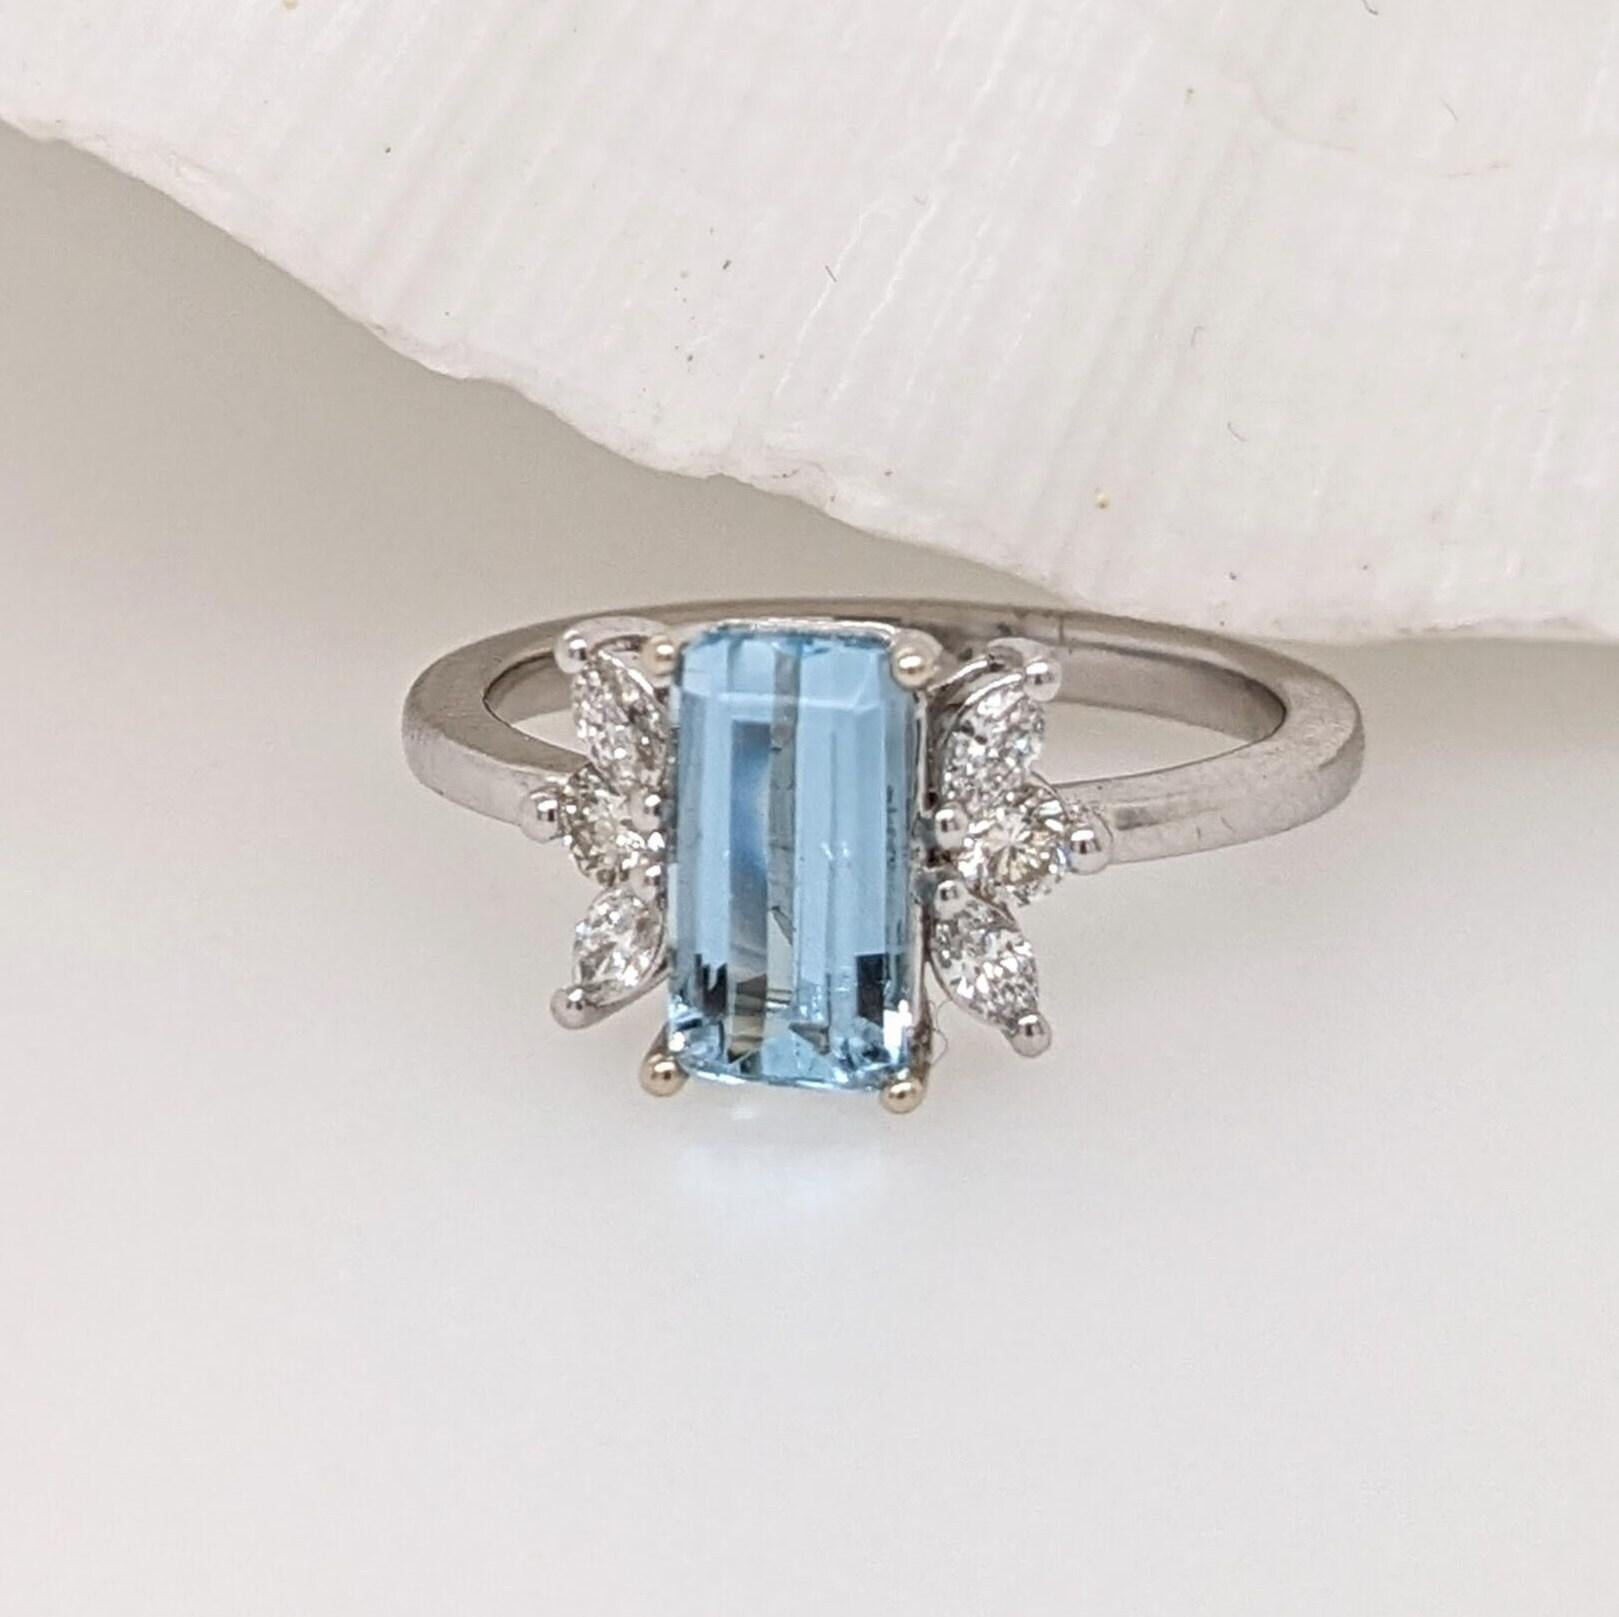 Dieser wunderschöne Ring besteht aus einem funkelnden Aquamarin im Smaragdschliff in 14-karätigem Weißgold mit einem schönen Halo aus natürlichen Diamanten. Ein auffälliges Ringdesign, perfekt für eine auffällige Verlobung oder einen Jahrestag.